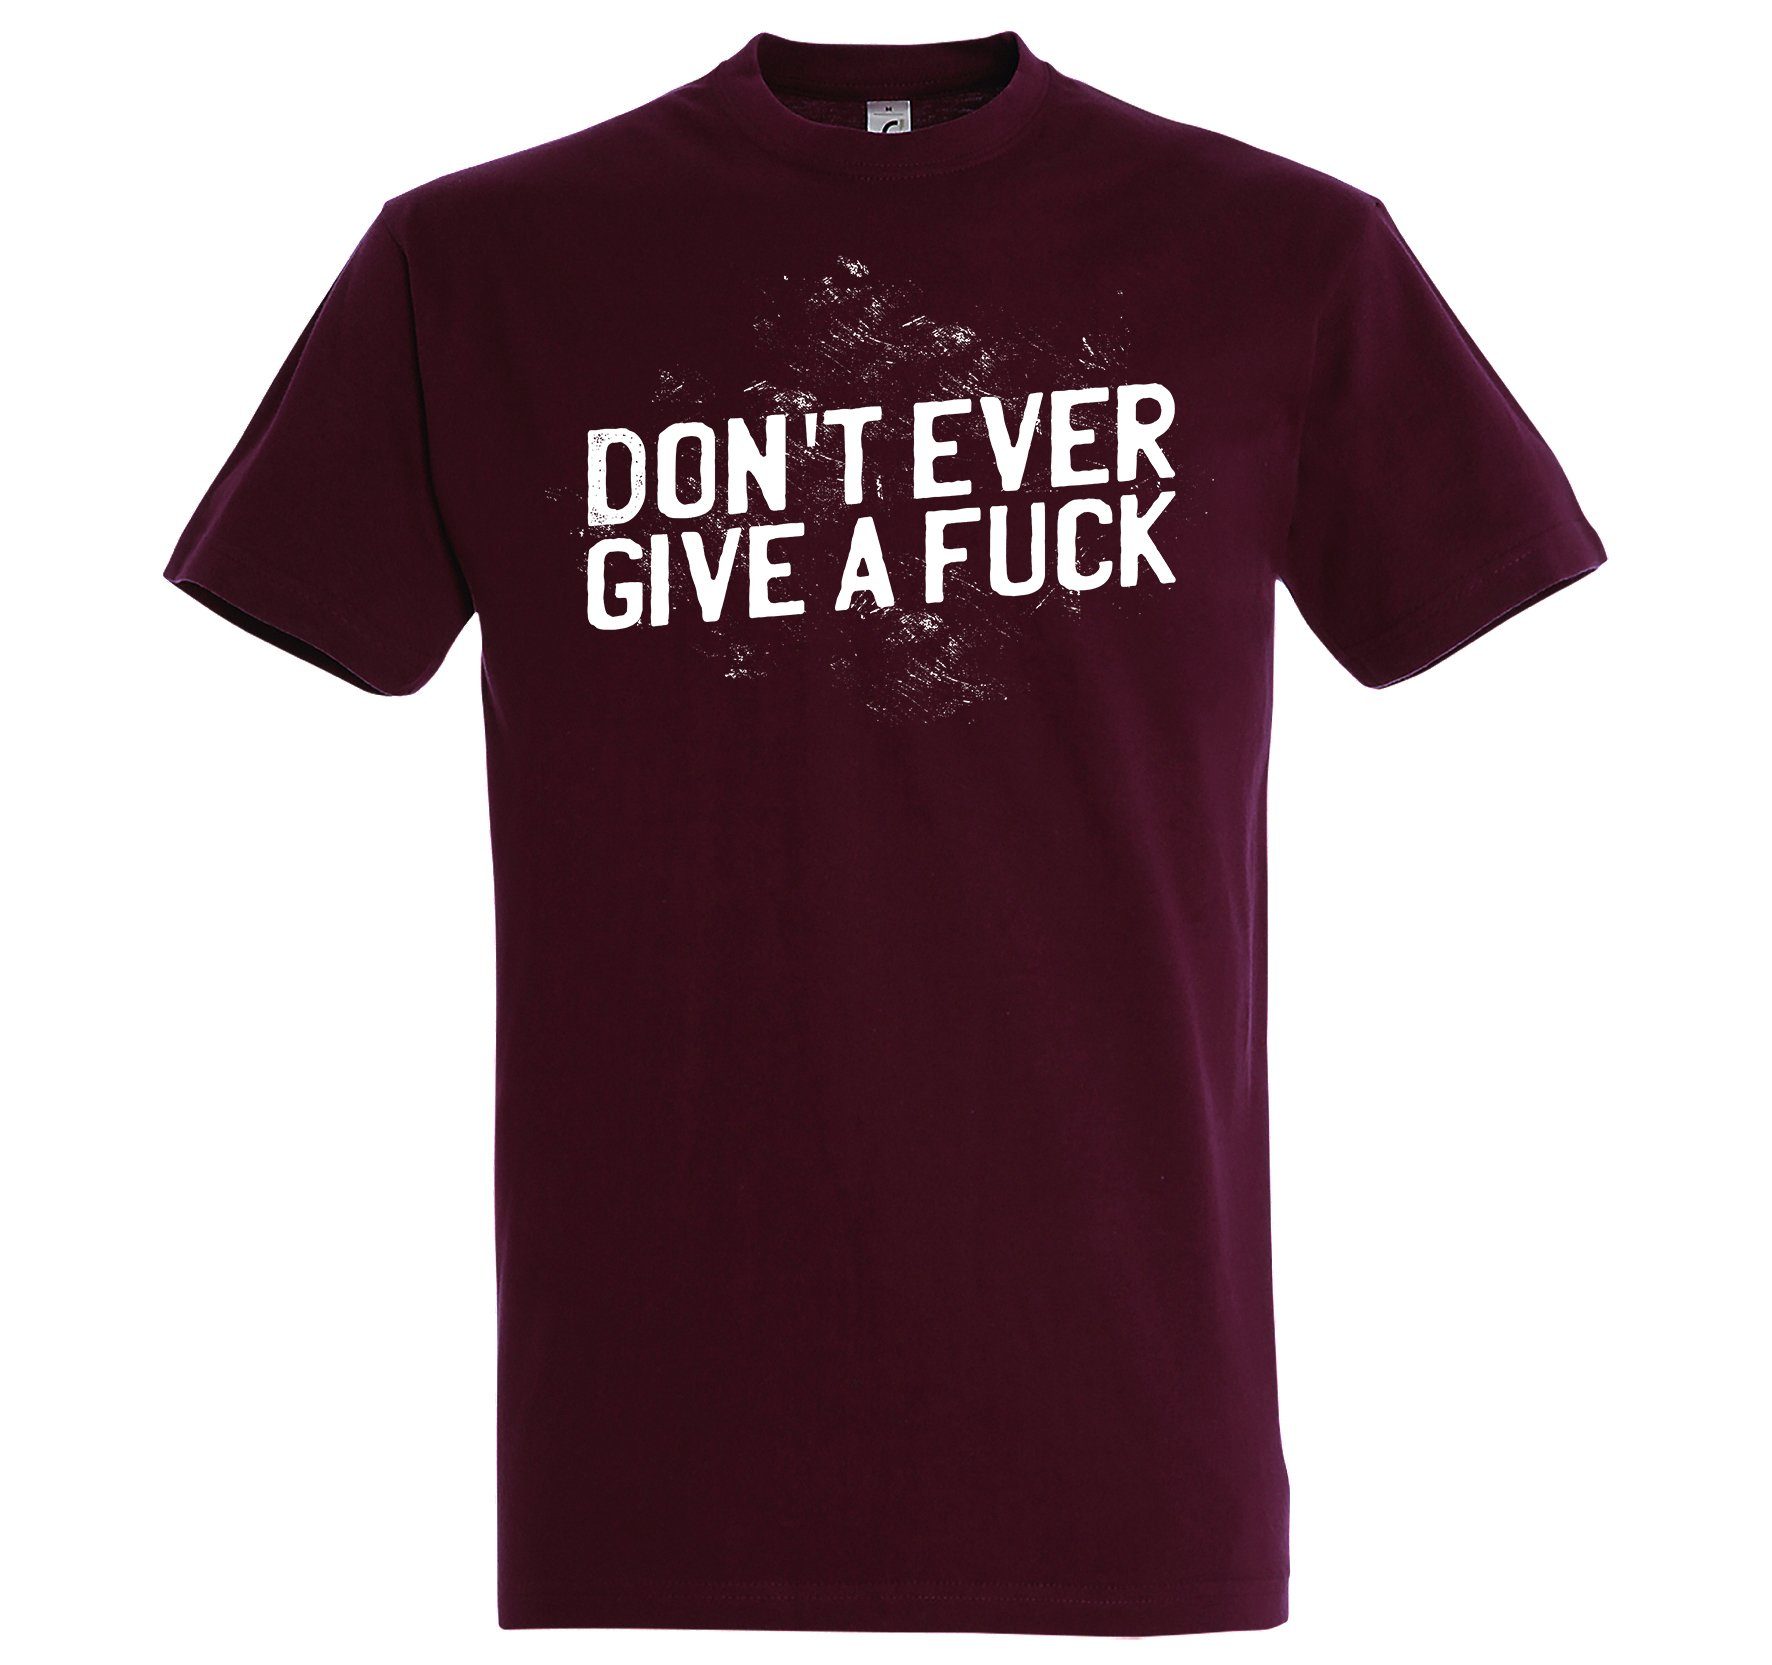 T-Shirt T-Shirt Spruch give Burgund a Youth Designz mit lustigem f*ck" ever "Don´t